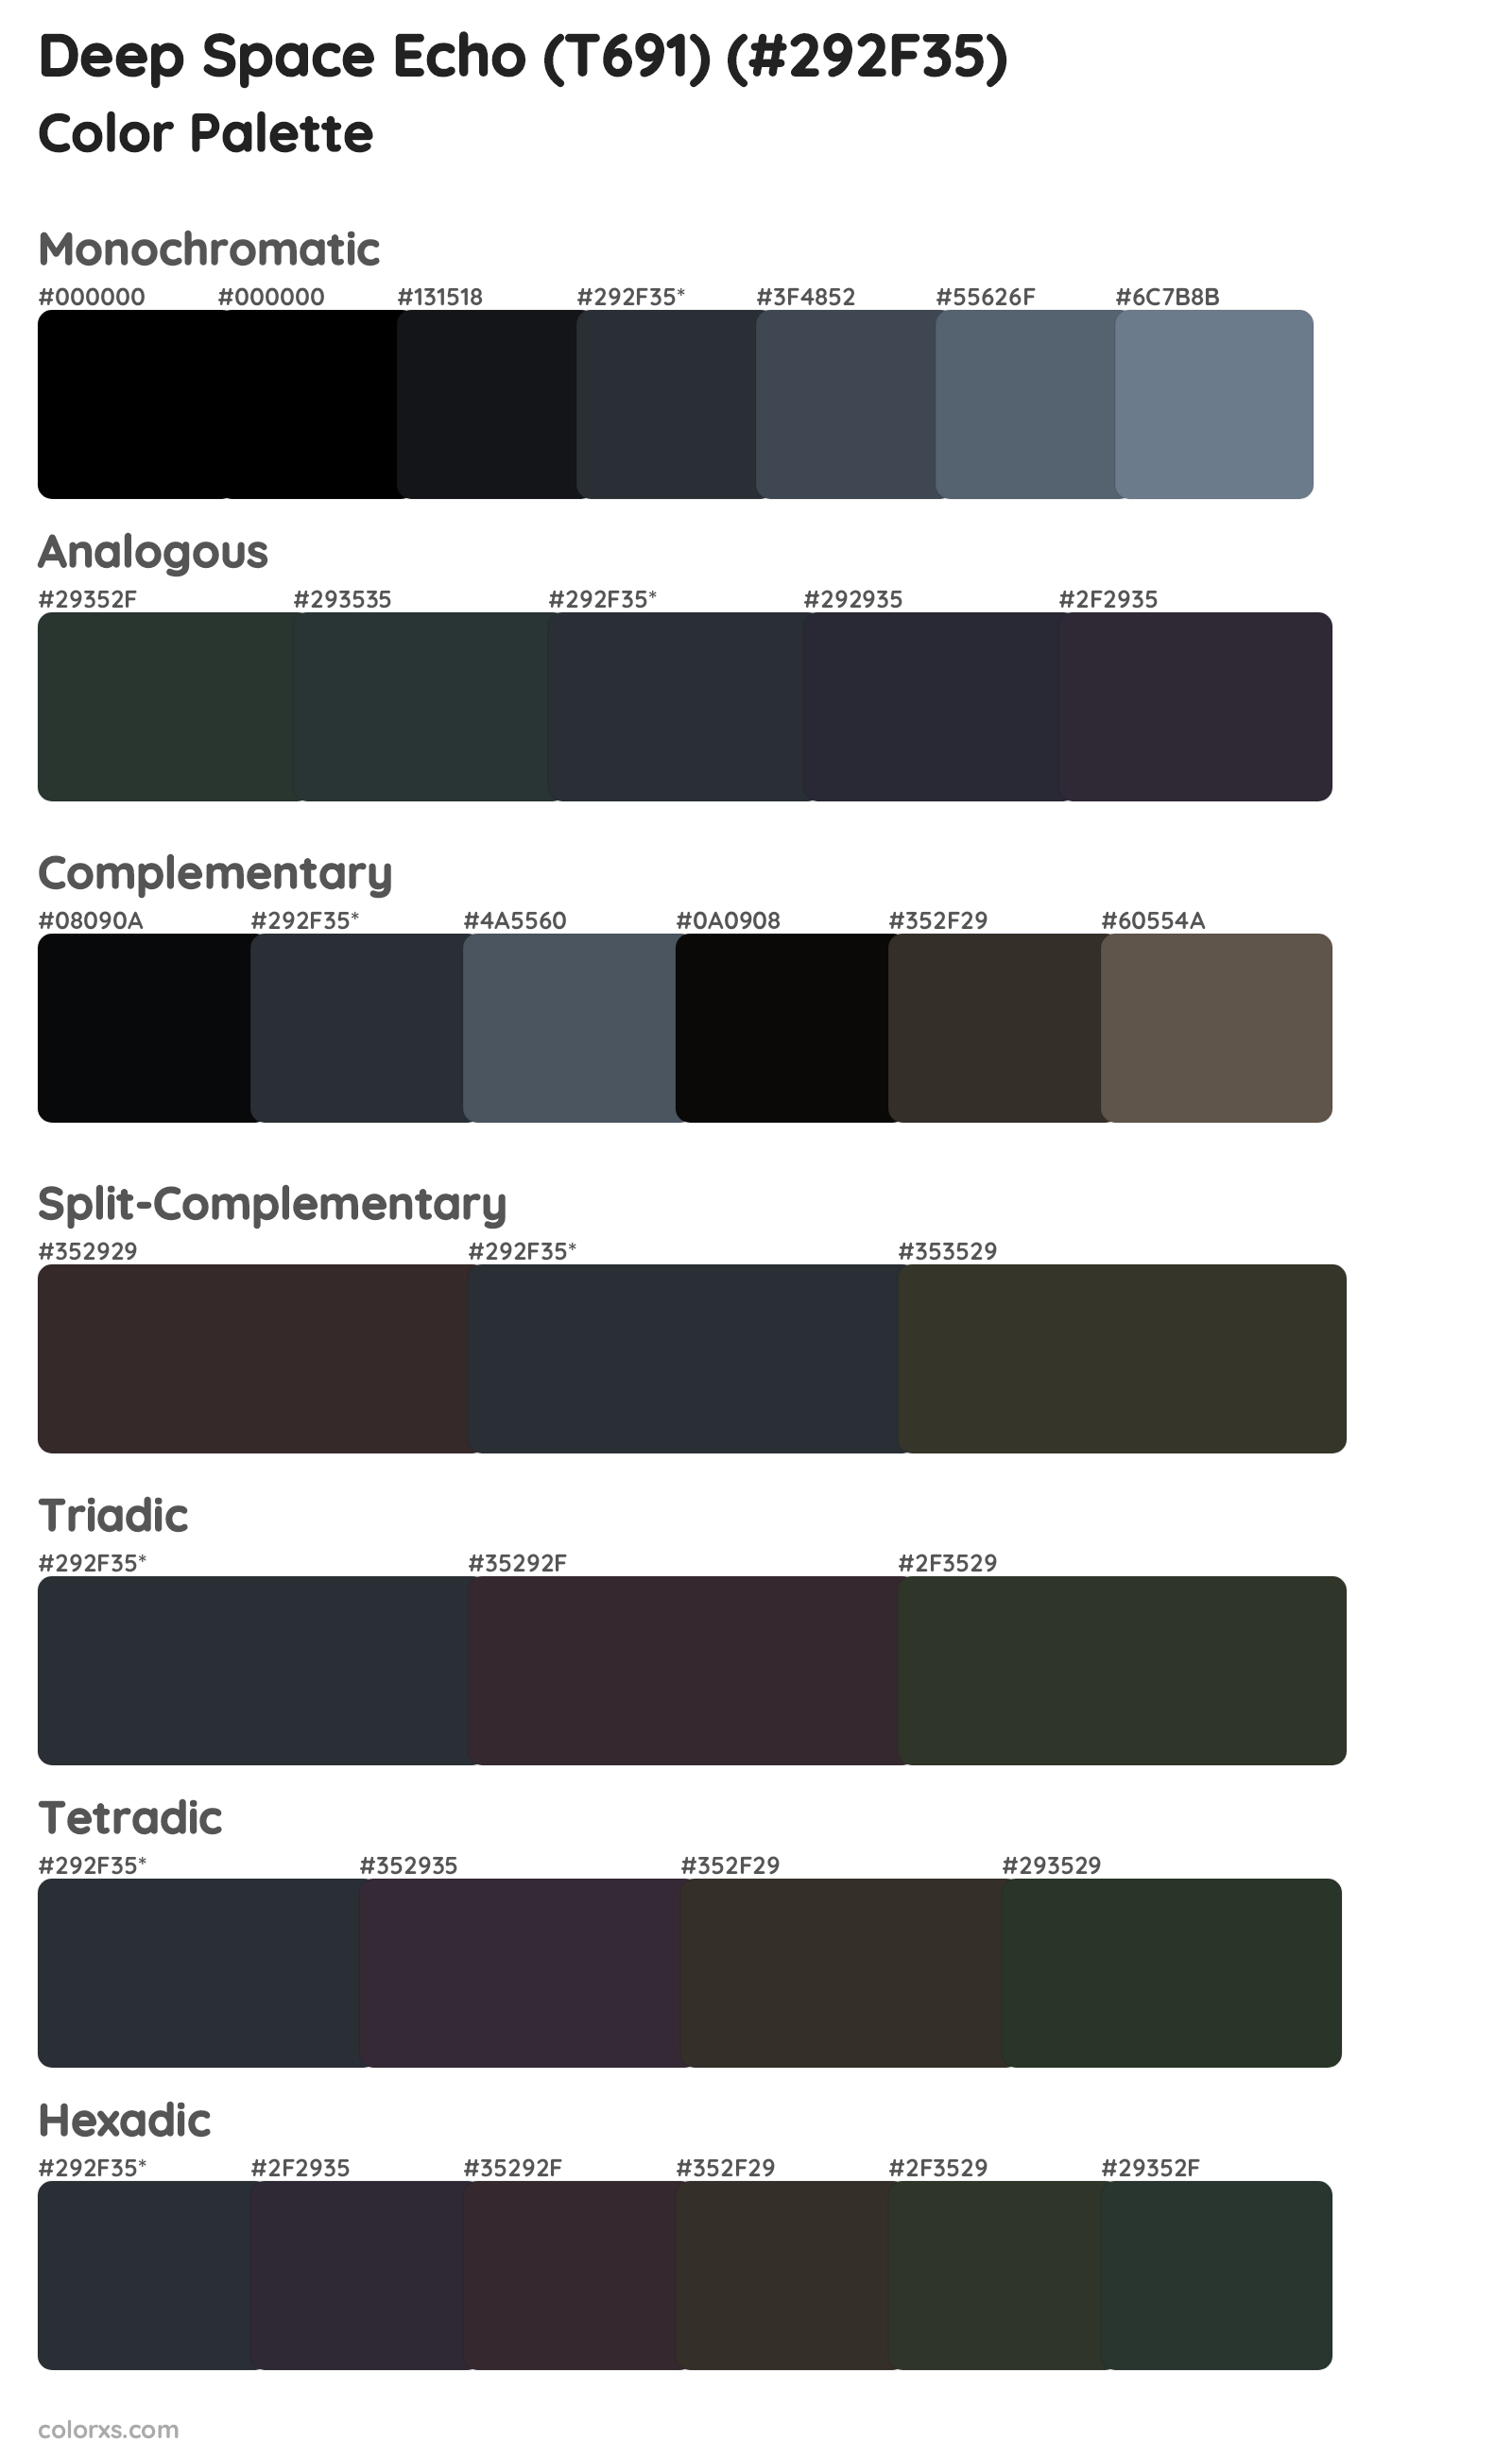 Deep Space Echo (T691) Color Scheme Palettes